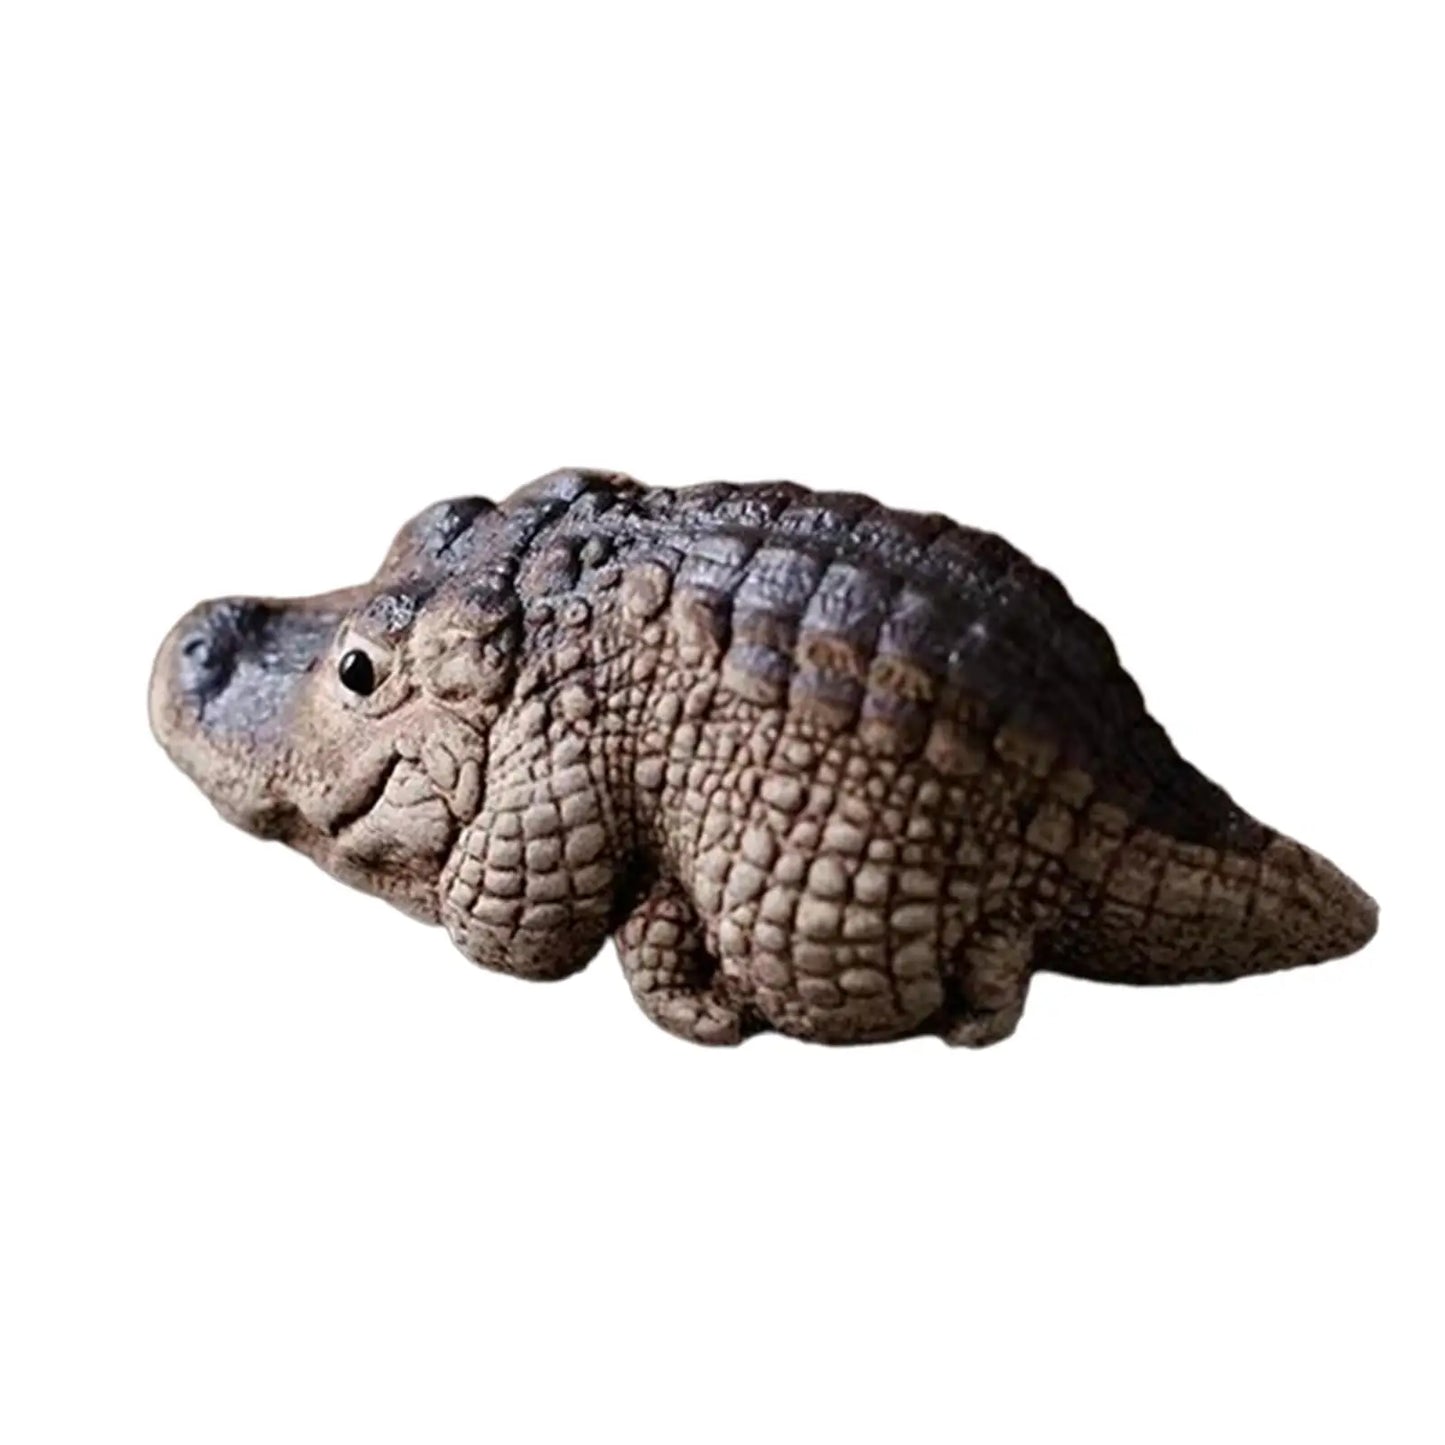 1x Argile Alligator Crocodile Mini Thé Pet Figurine Décoration Miniature Figurine